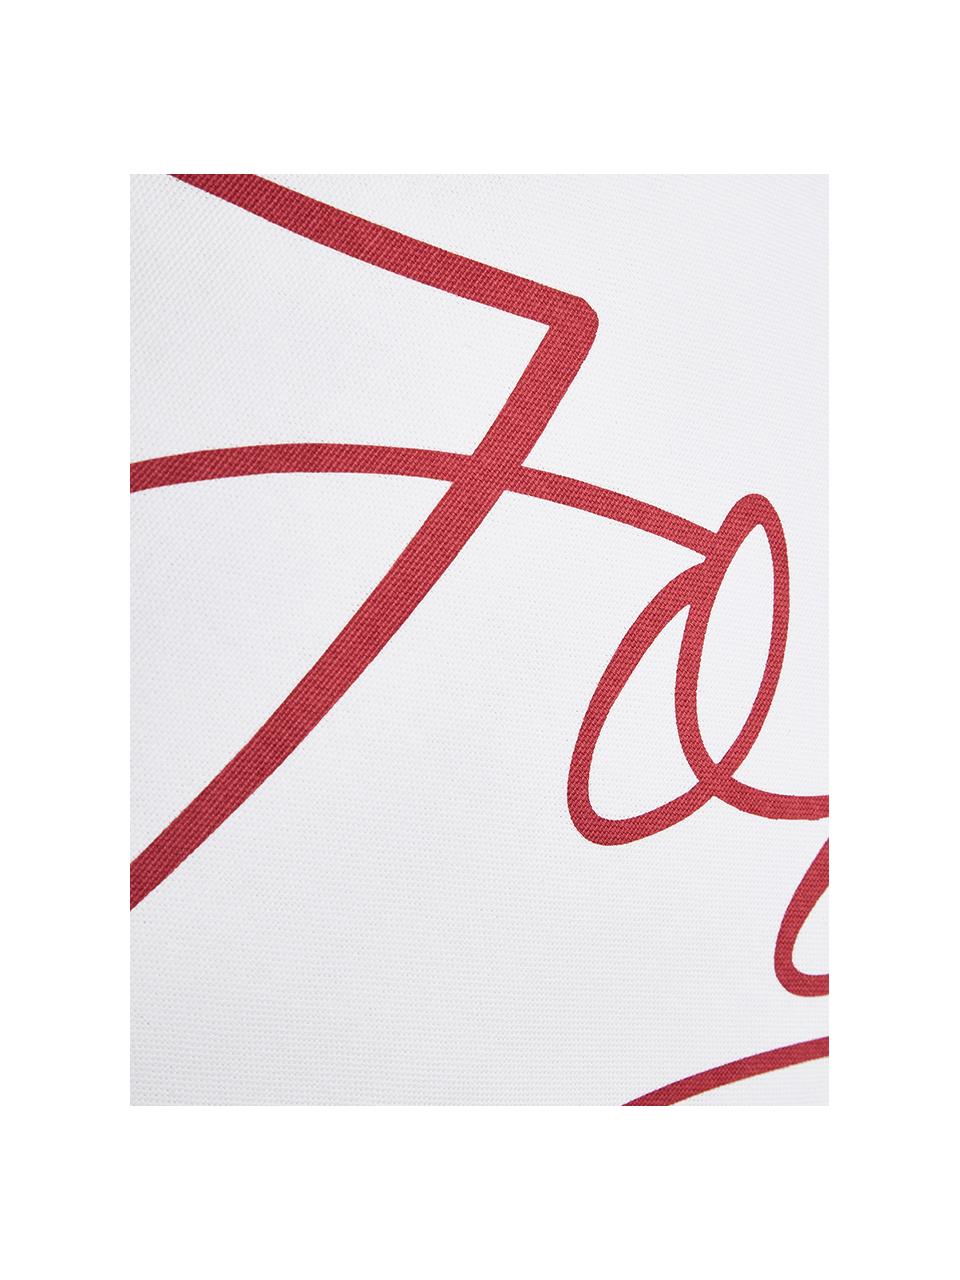 Kissenhülle Joy mit Schriftzug in Weiß-Rot, Baumwolle, Weiß, Rot, 40 x 40 cm